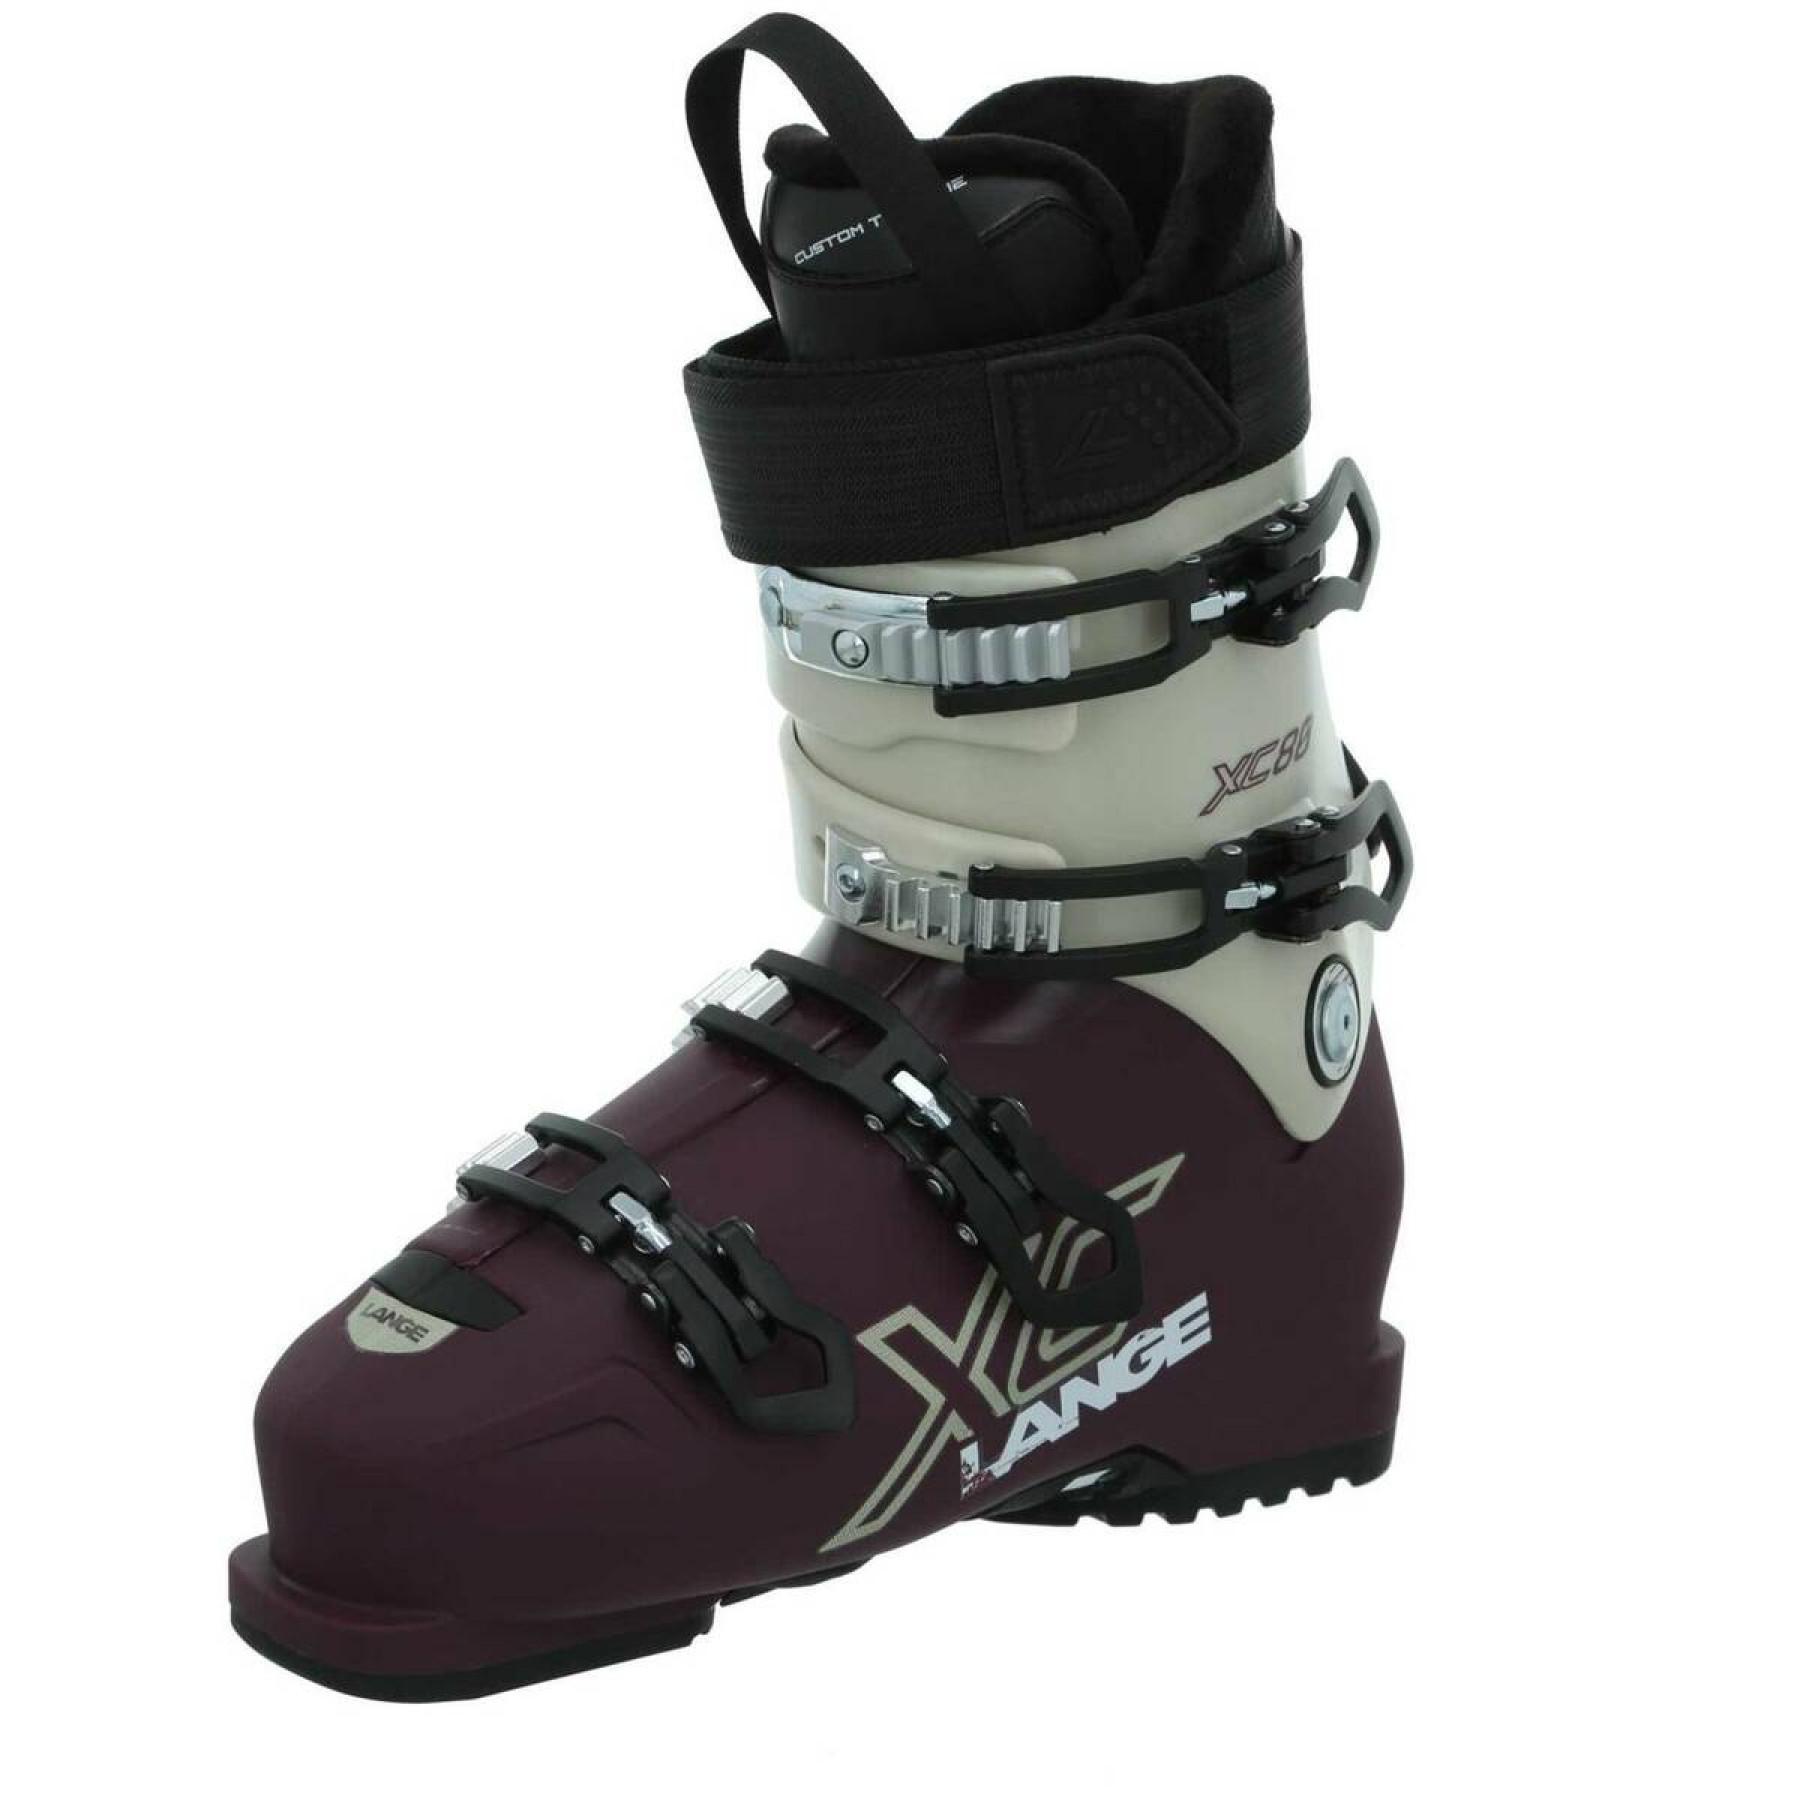 Chaussures de ski femme Lange xc 80